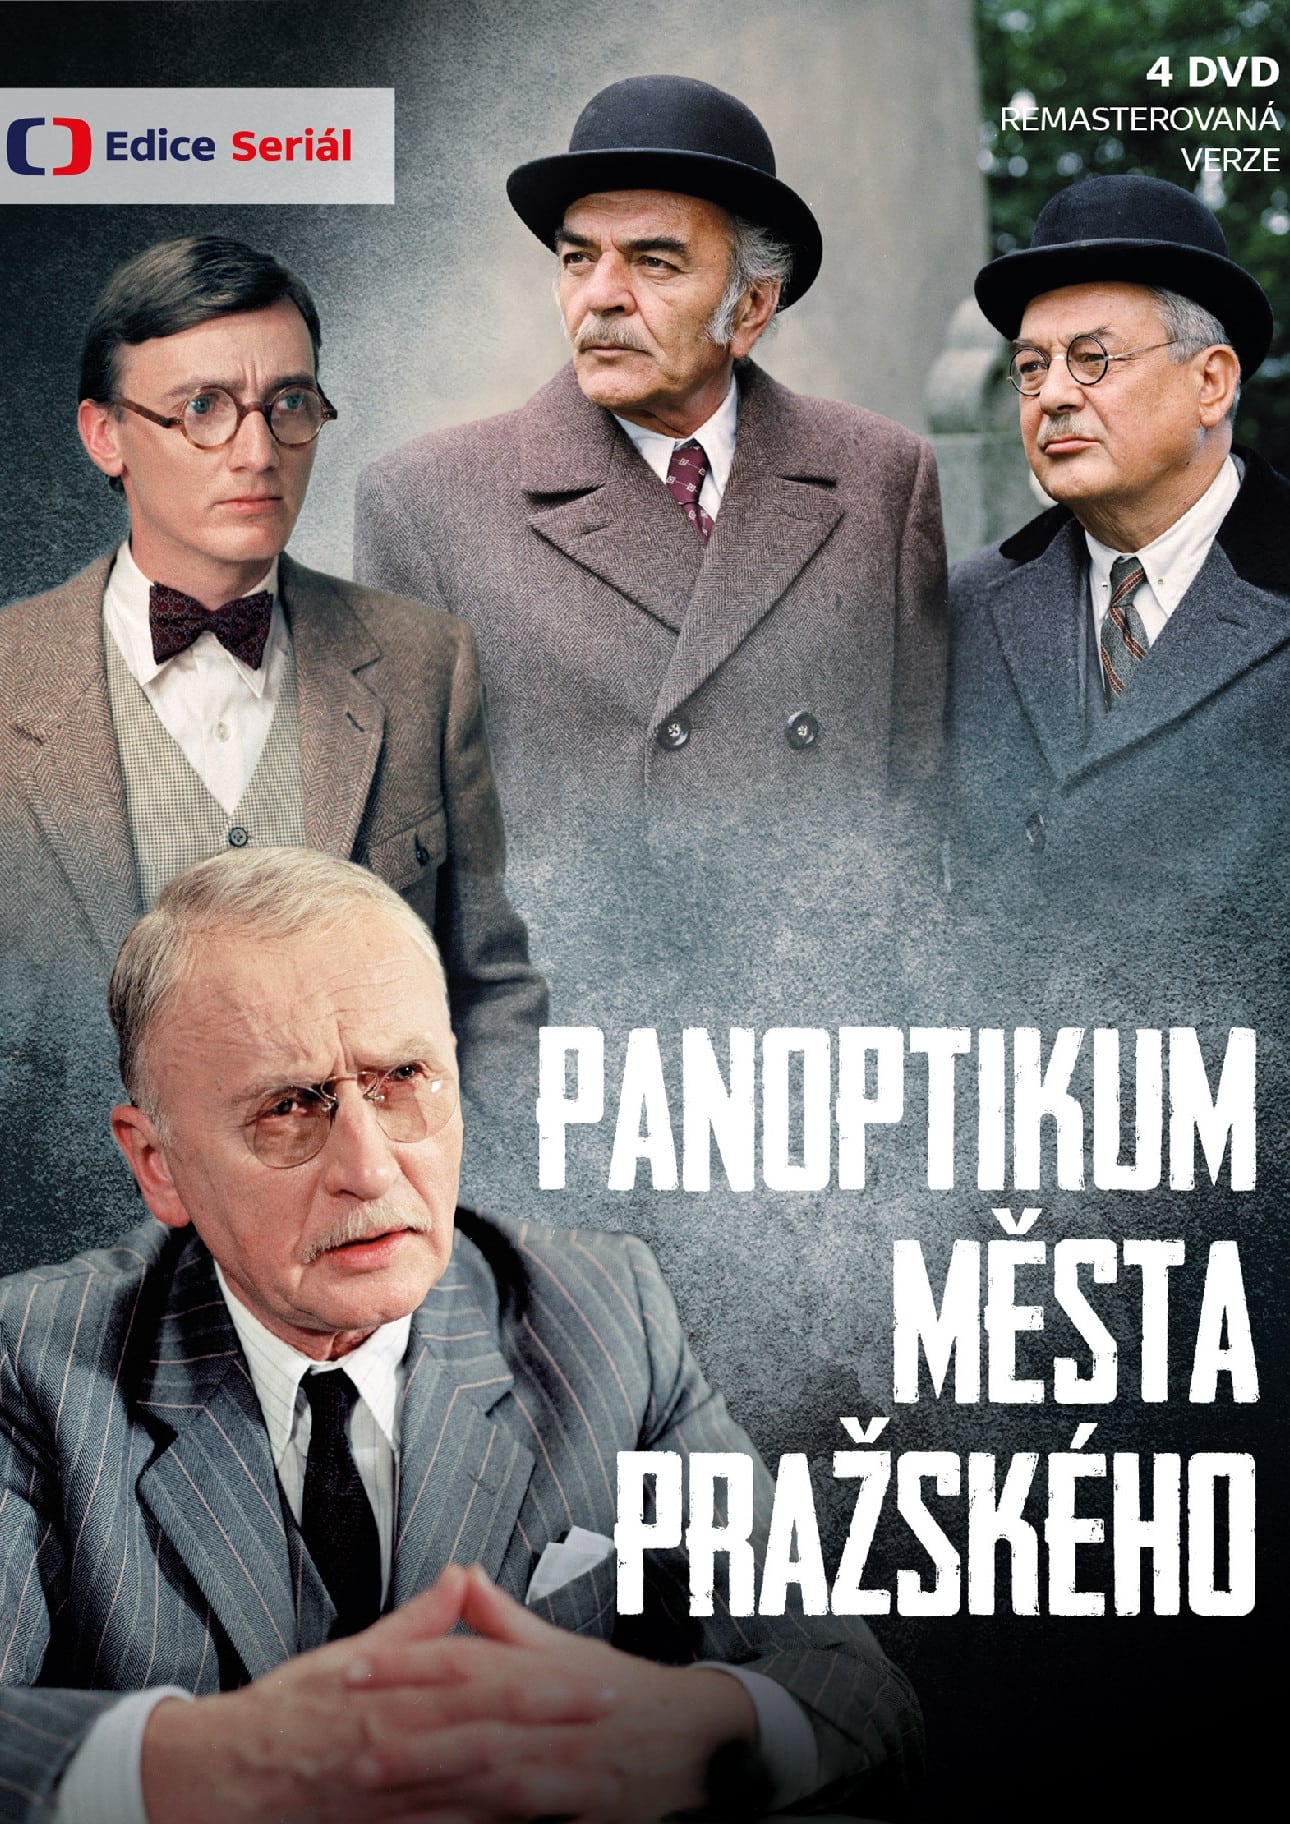 Plakát pro film “Panoptikum Města pražského”